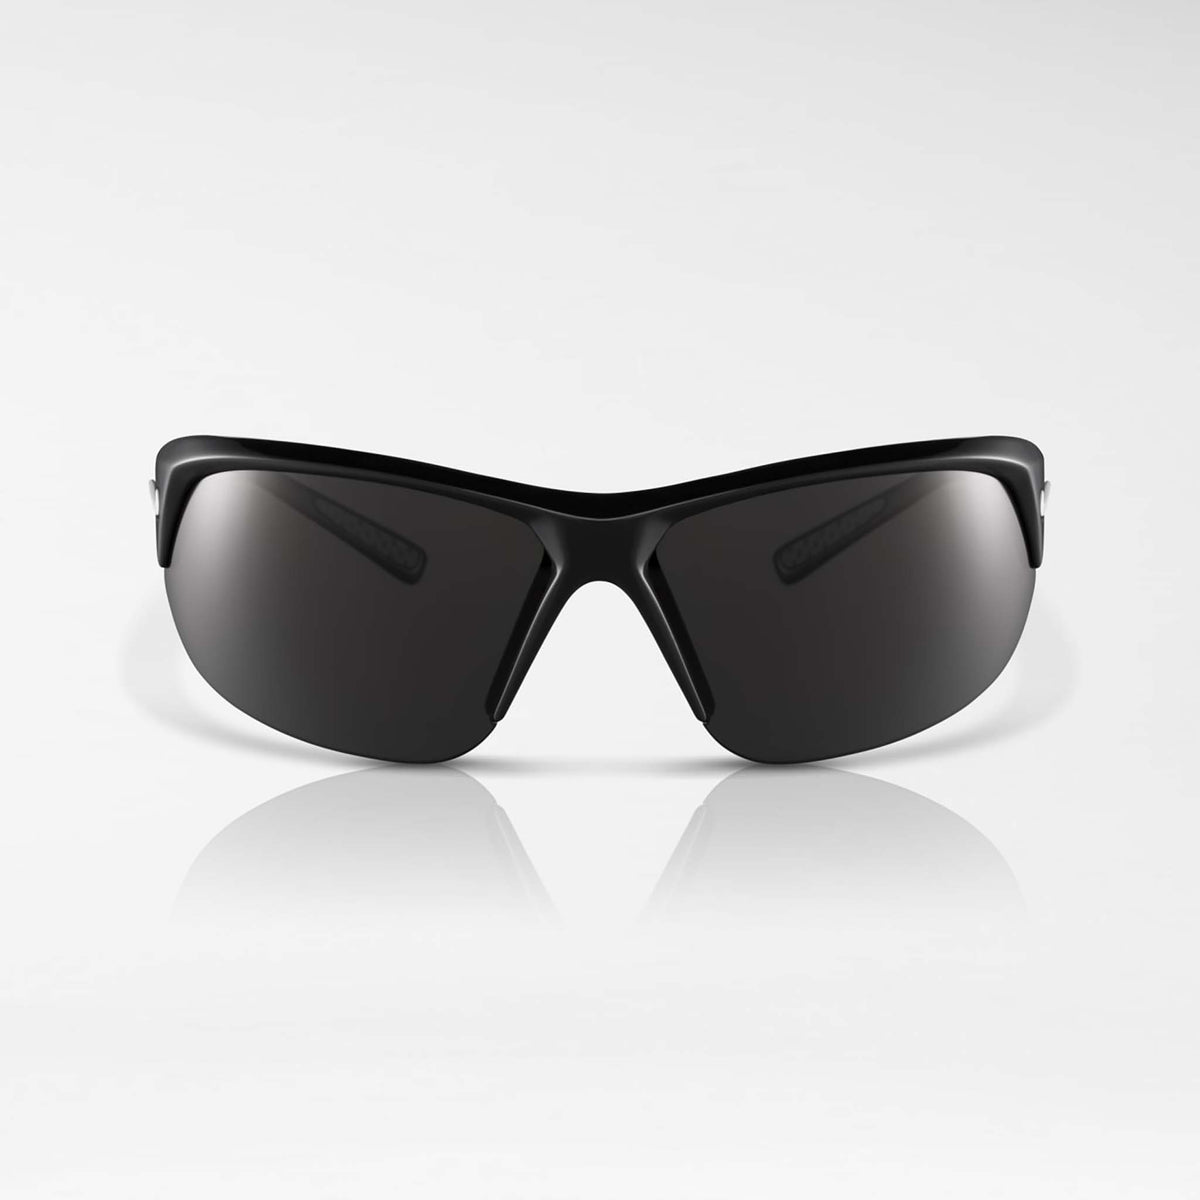 Nike Skylon Ace lunettes de soleil sport noir gris face